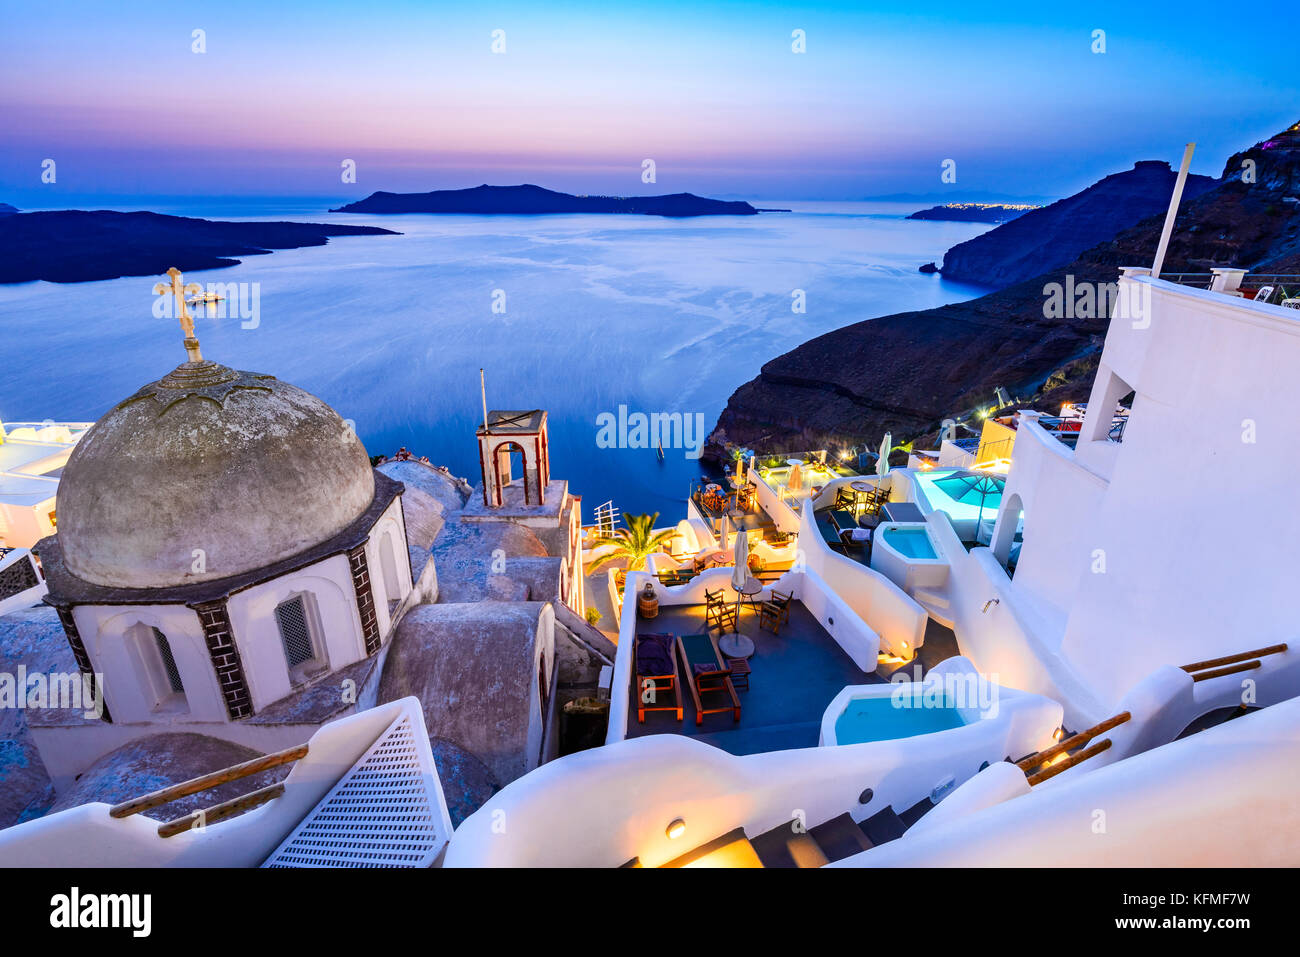 Fira, Santorini - Griechische Inseln Sehenswürdigkeiten mit weißen Dorf, gepflasterten Wegen der griechisch-orthodoxen Kirche und blau Sonnenuntergang über der Caldera. Kykladen, Griechenland. Stockfoto